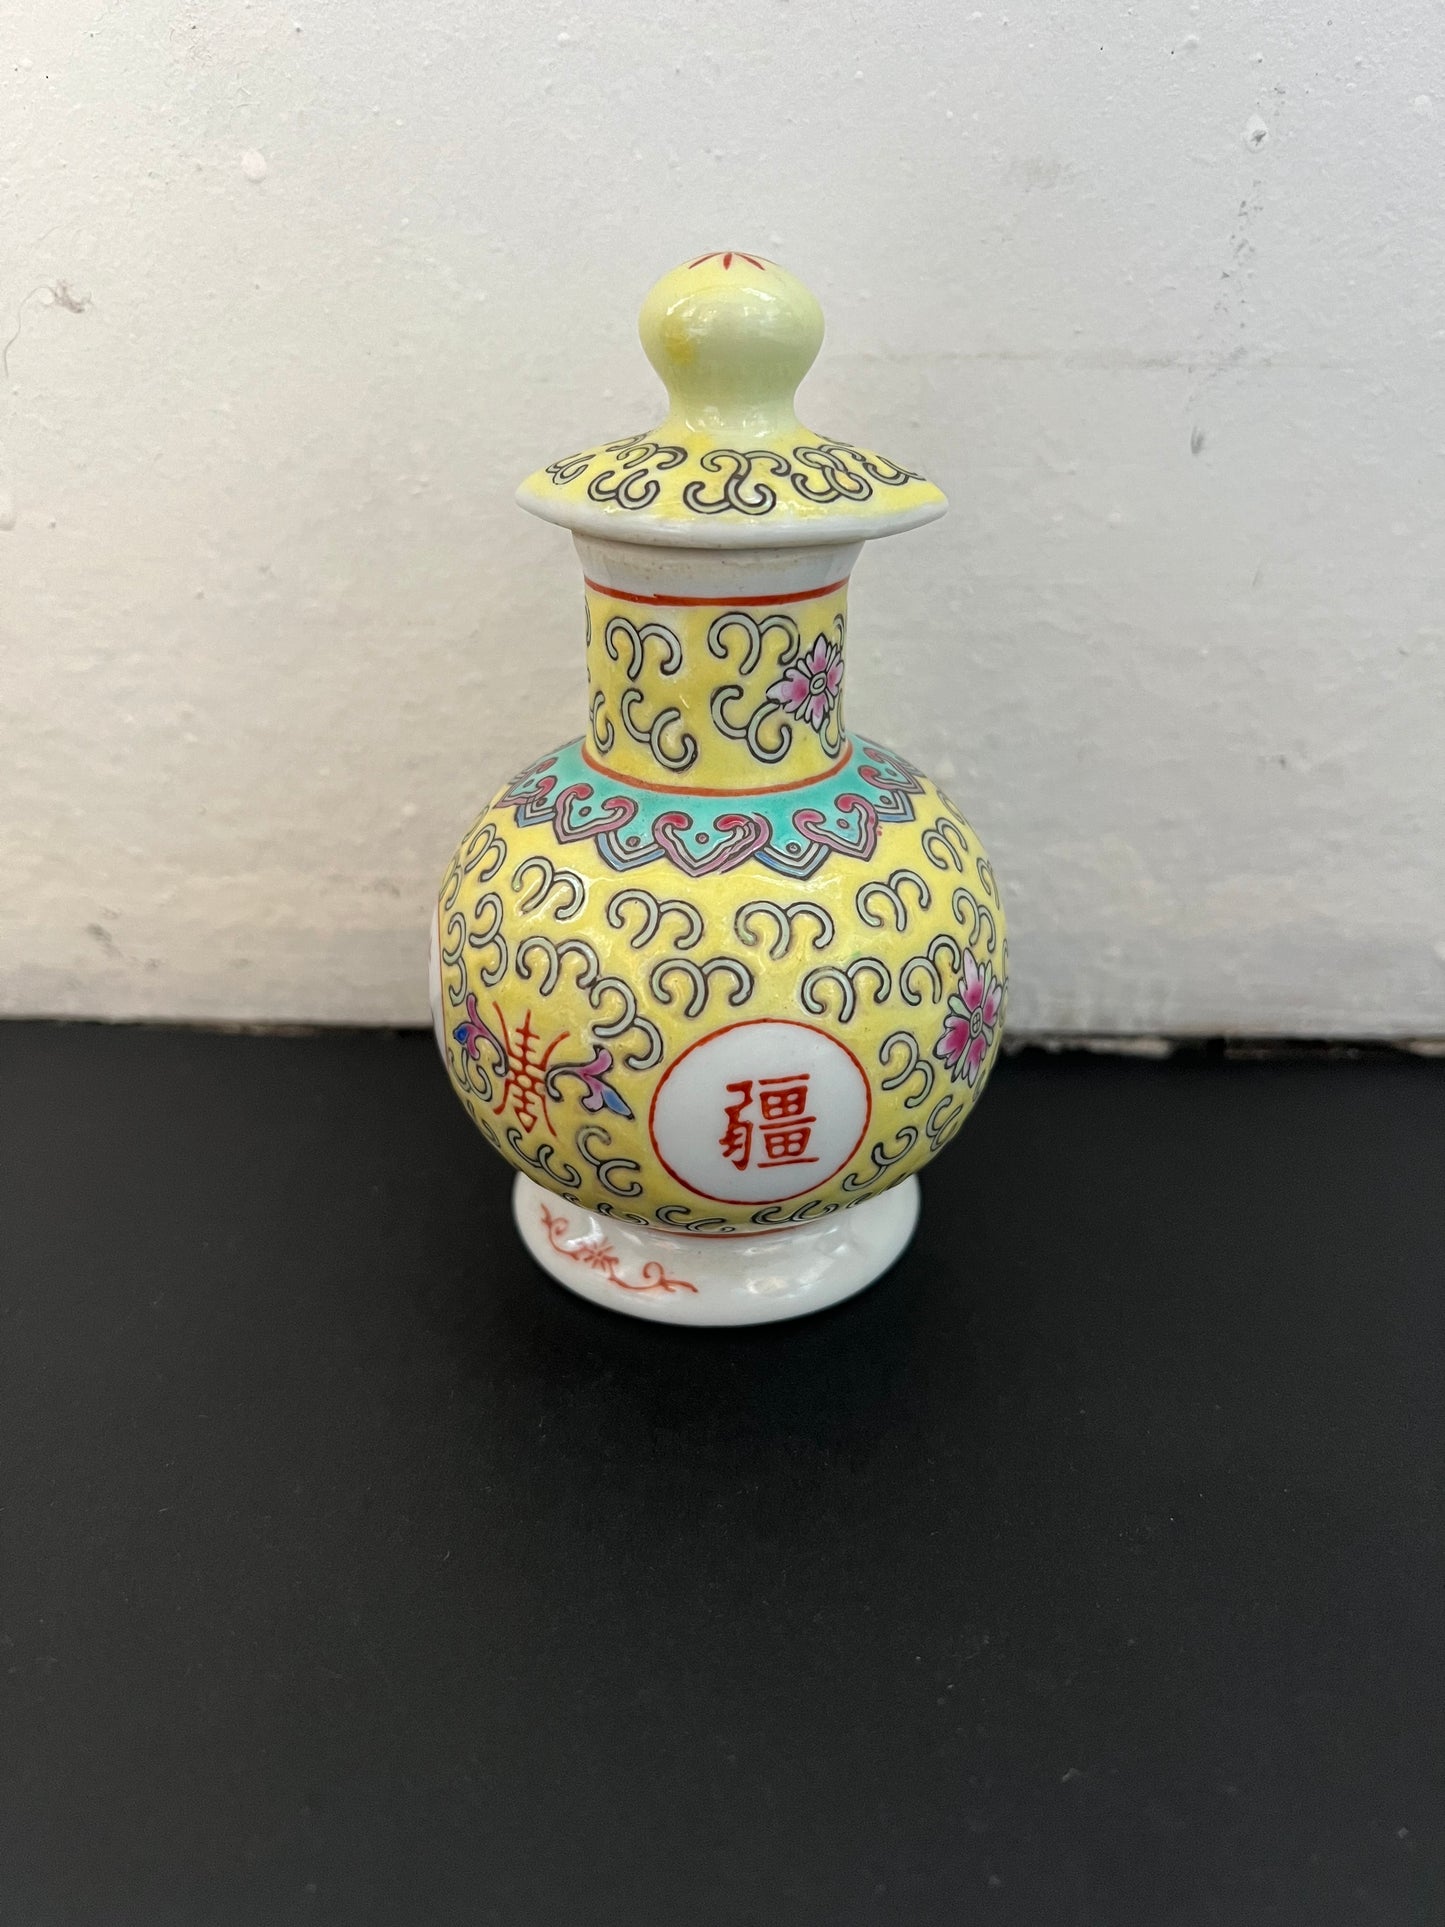 20 世纪 70 年代中期景德镇黄门寿瓷带盖酱油罐，螺旋盖